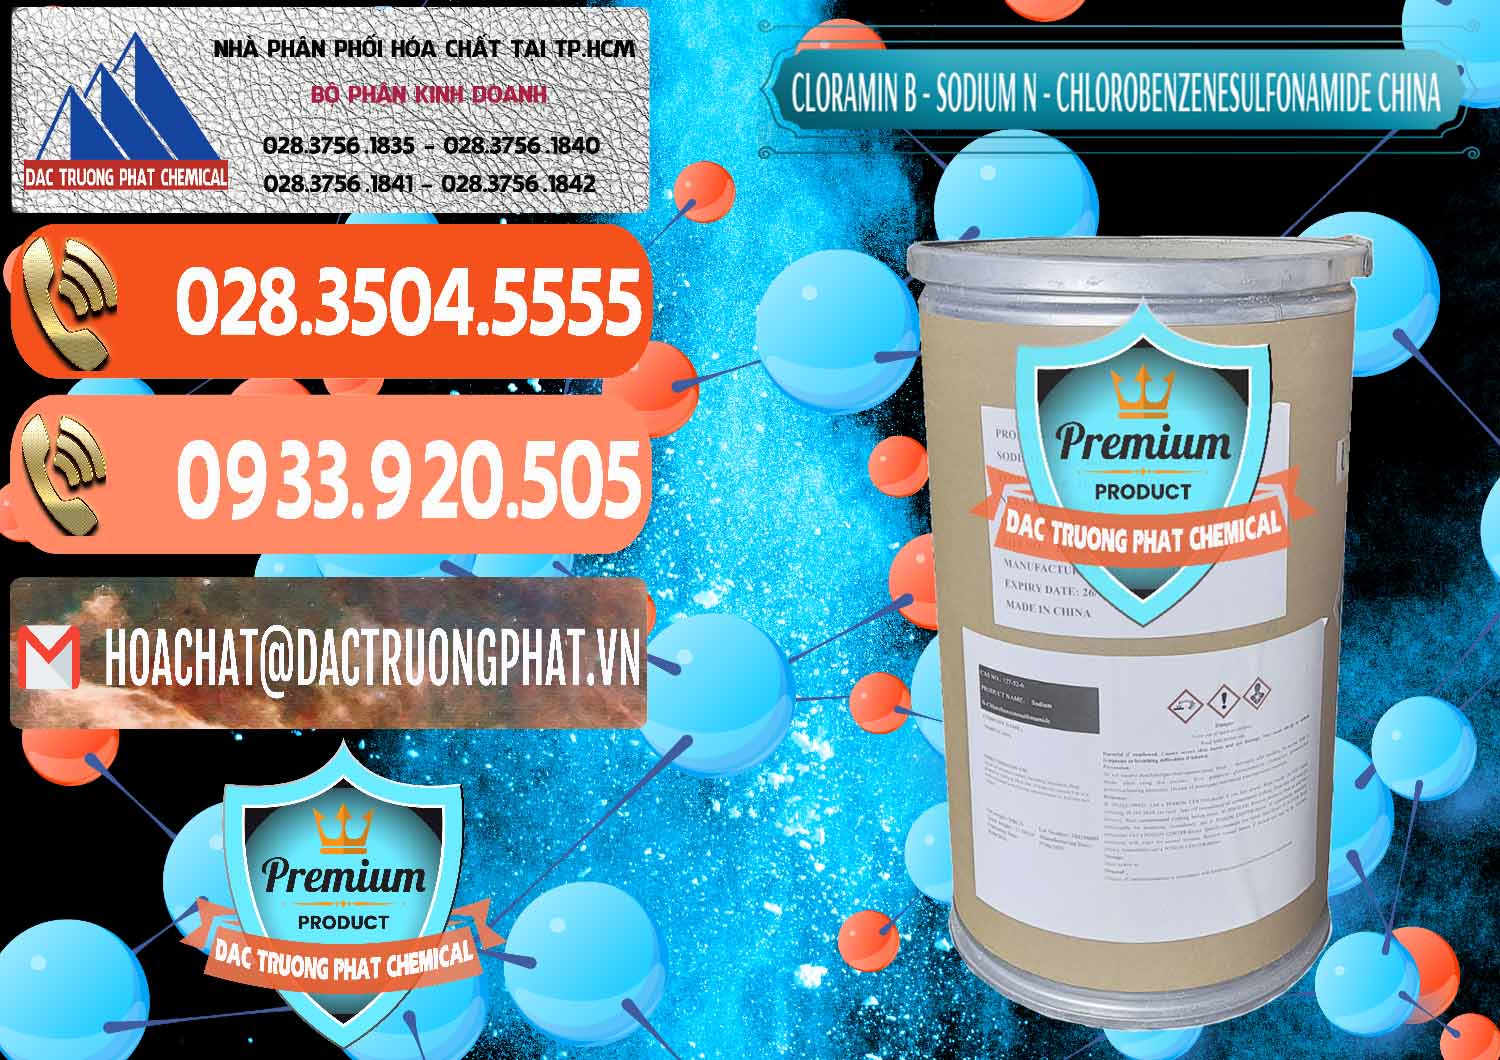 Cty chuyên phân phối & bán Cloramin B Khử Trùng, Diệt Khuẩn Trung Quốc China - 0298 - Nơi chuyên cung cấp ( bán ) hóa chất tại TP.HCM - hoachatmientay.com